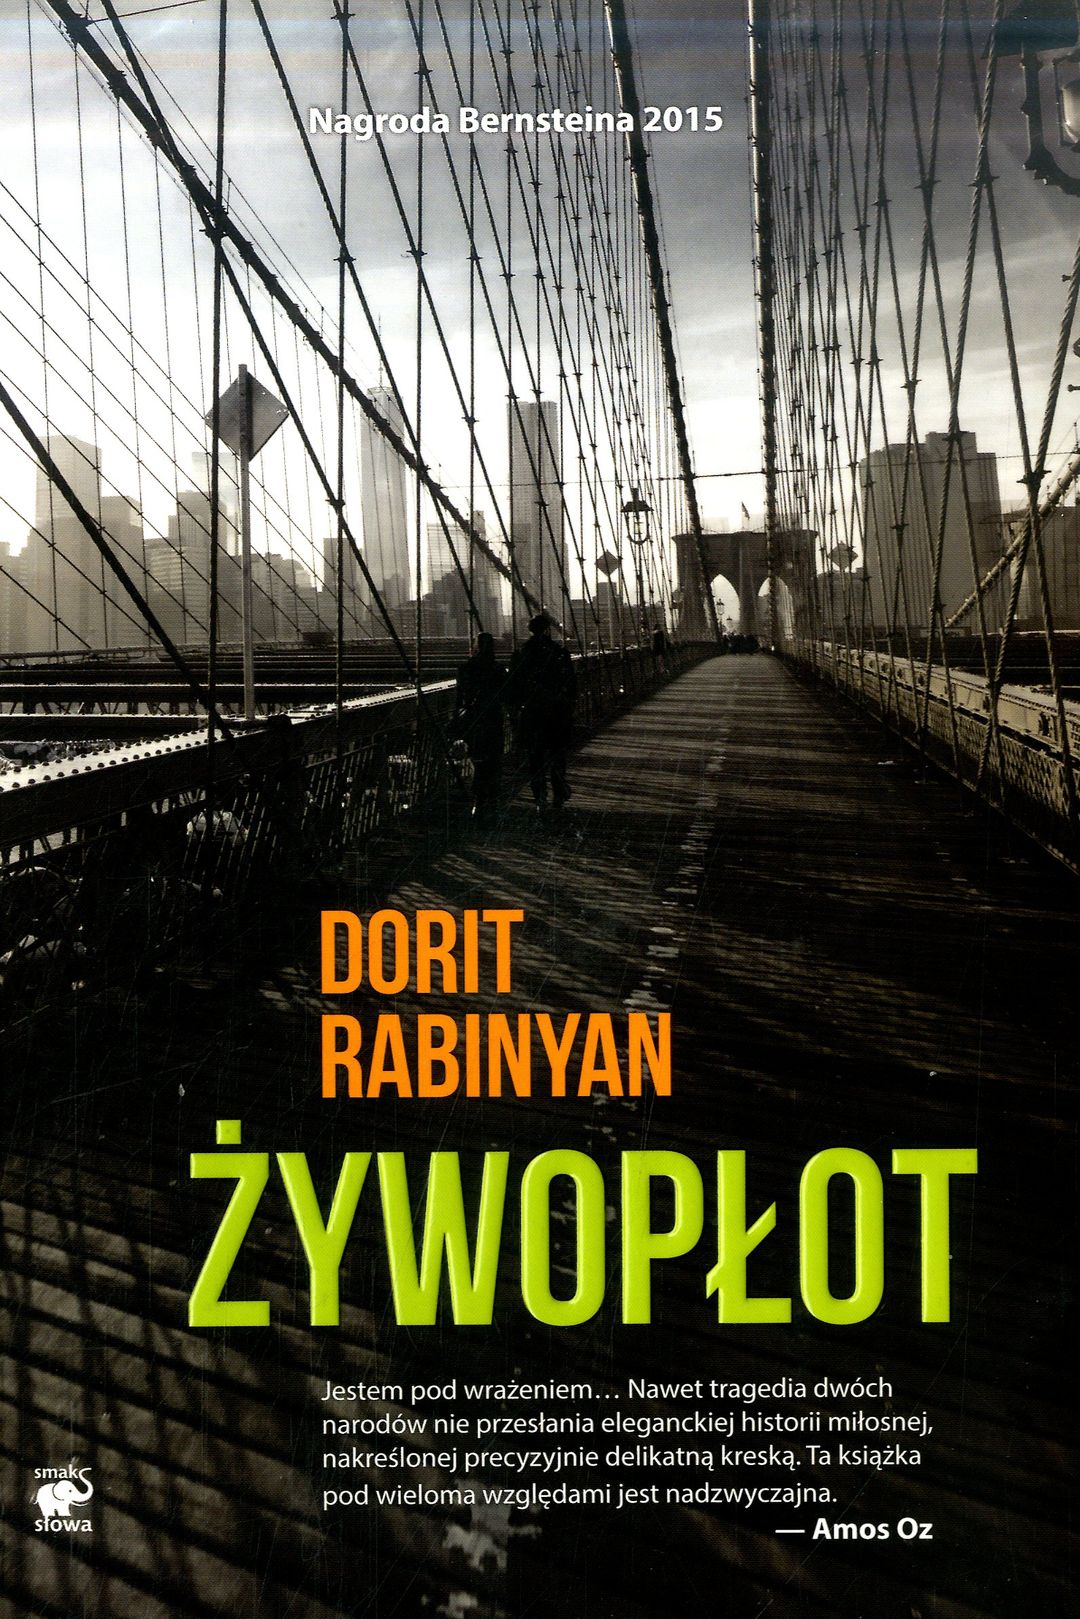 Rabinyan Dorit Zywoplot